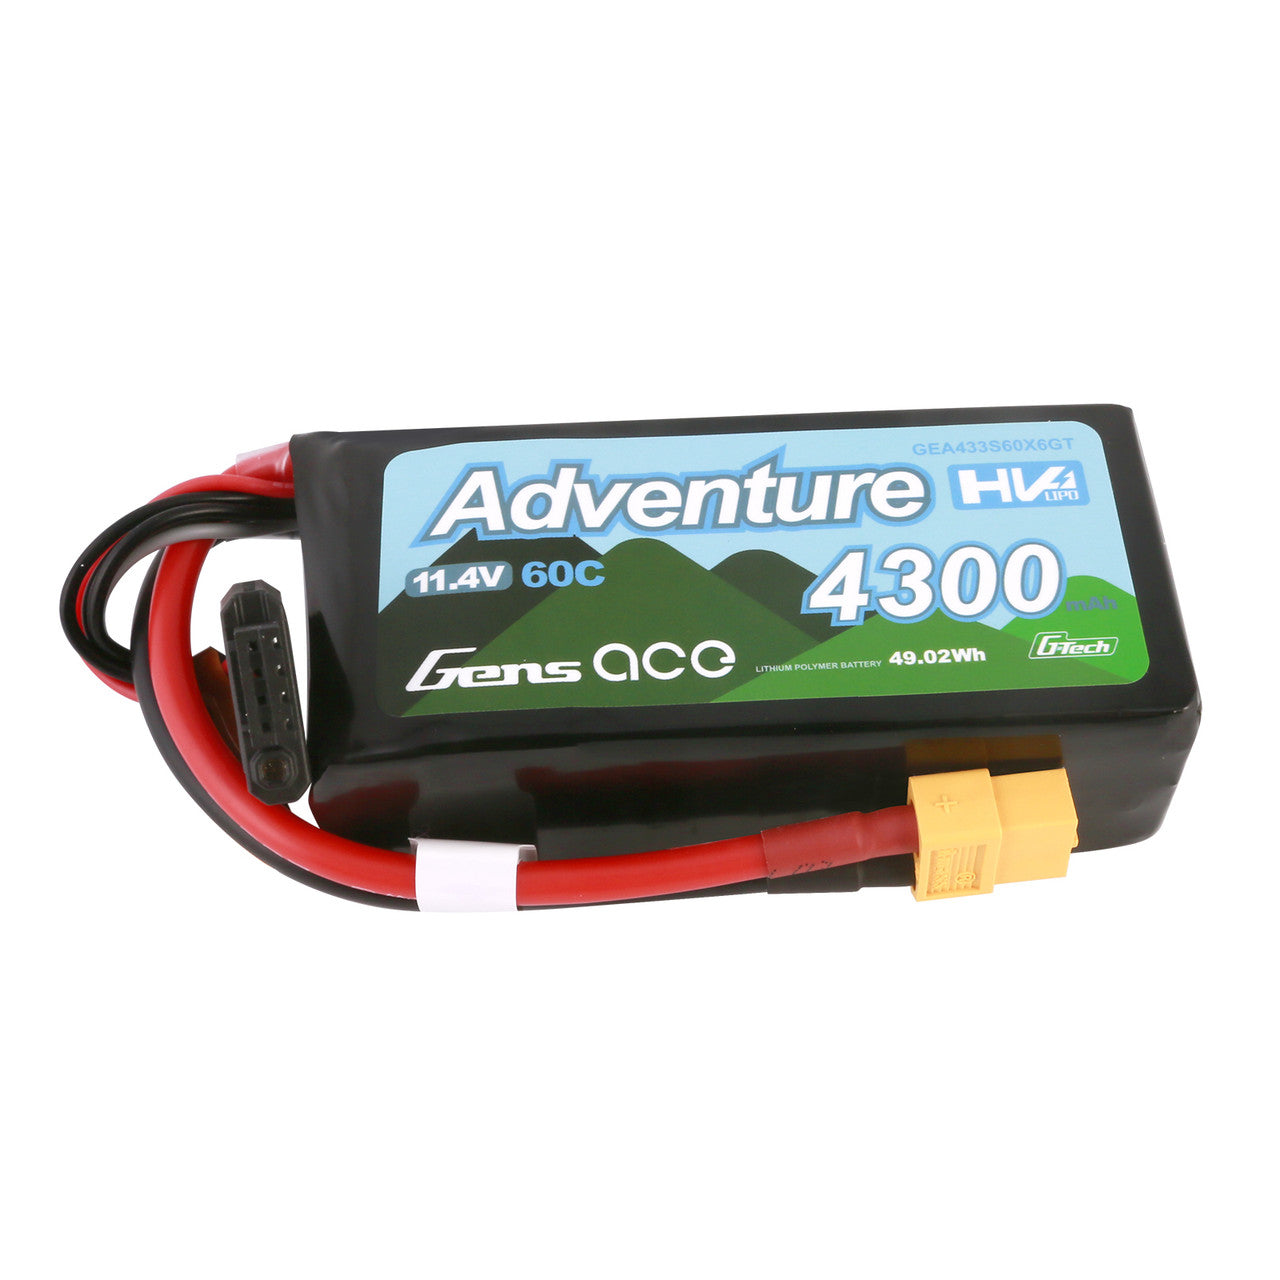 GEA433S60X6GT Gens Ace Adventure batterie haute tension 4300 mAh 3S1P 11.4 V 60C g-techLipo avec prise XT60